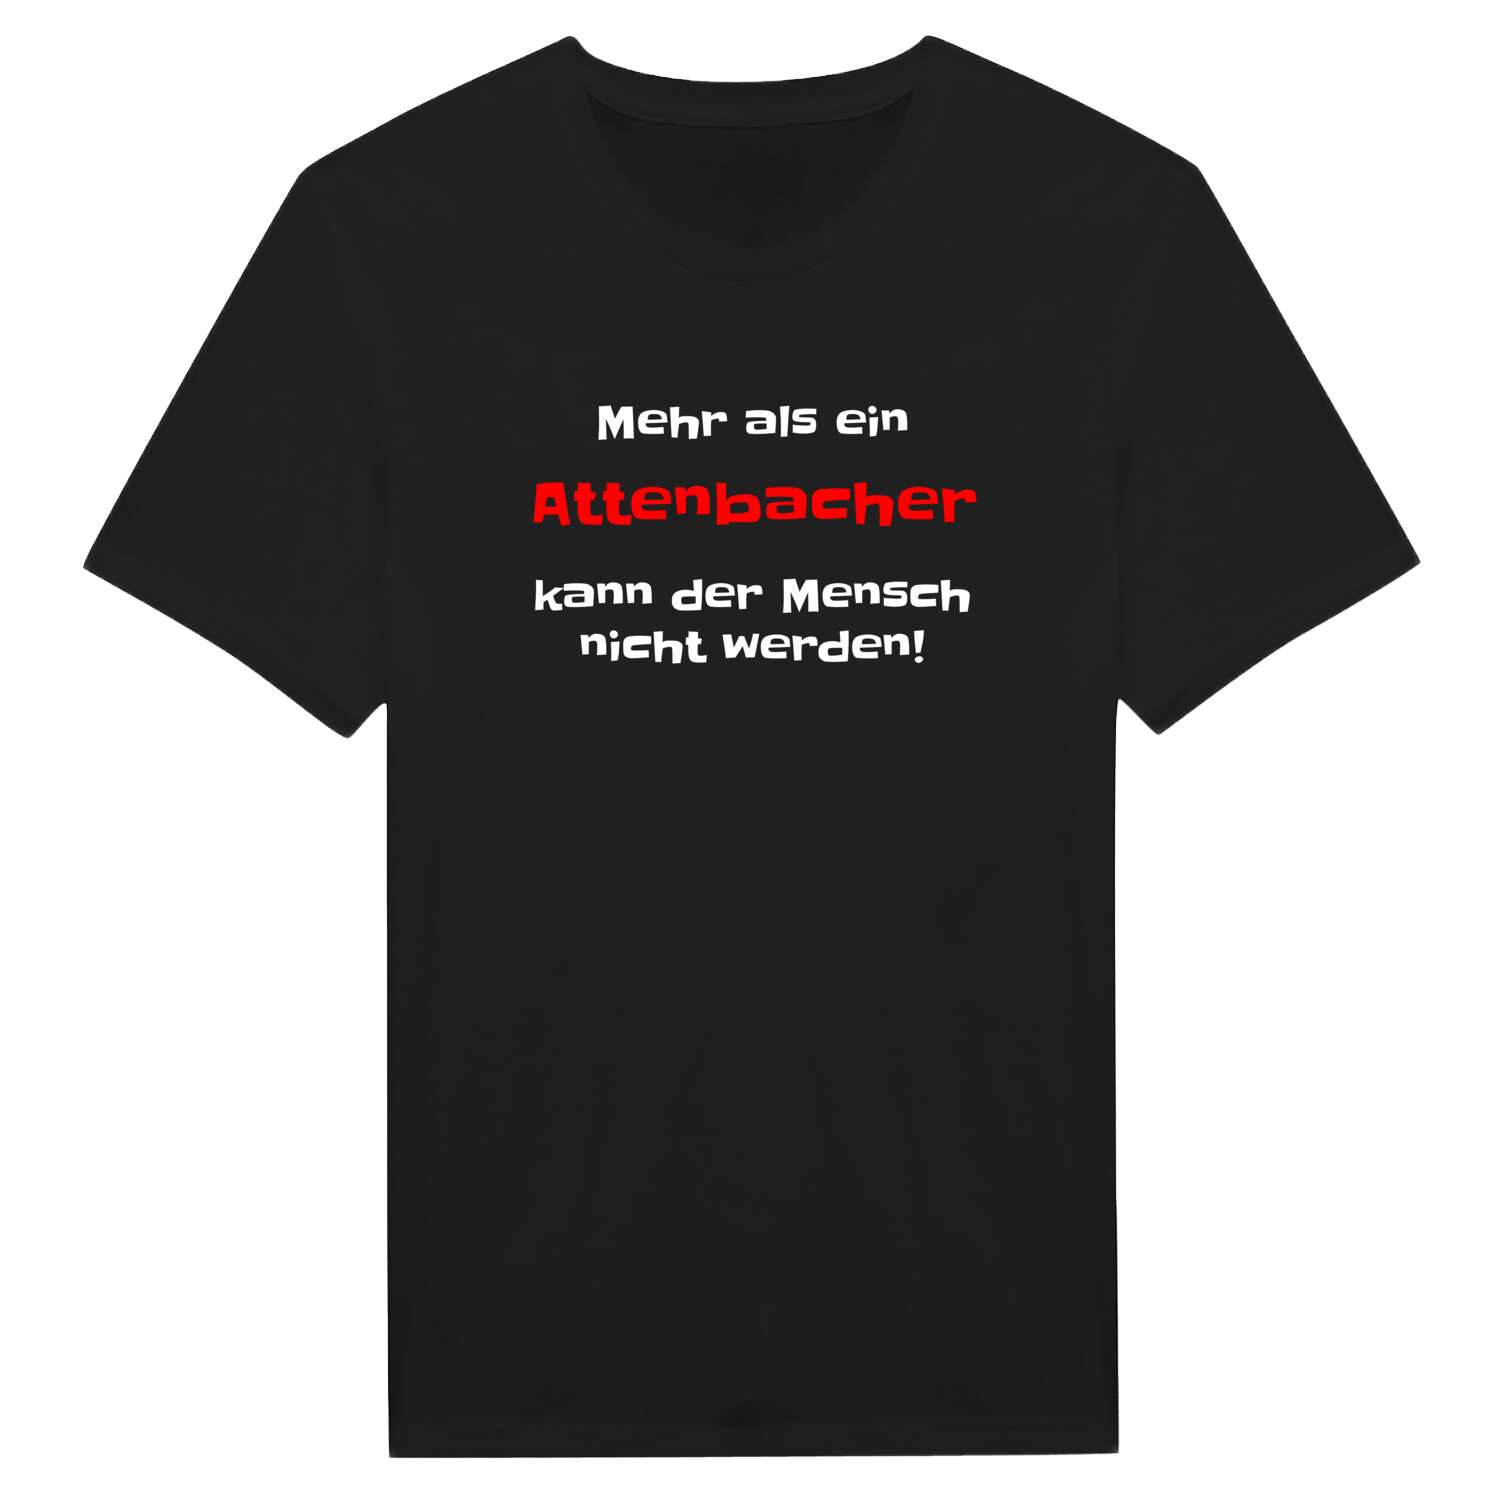 Attenbach T-Shirt »Mehr als ein«